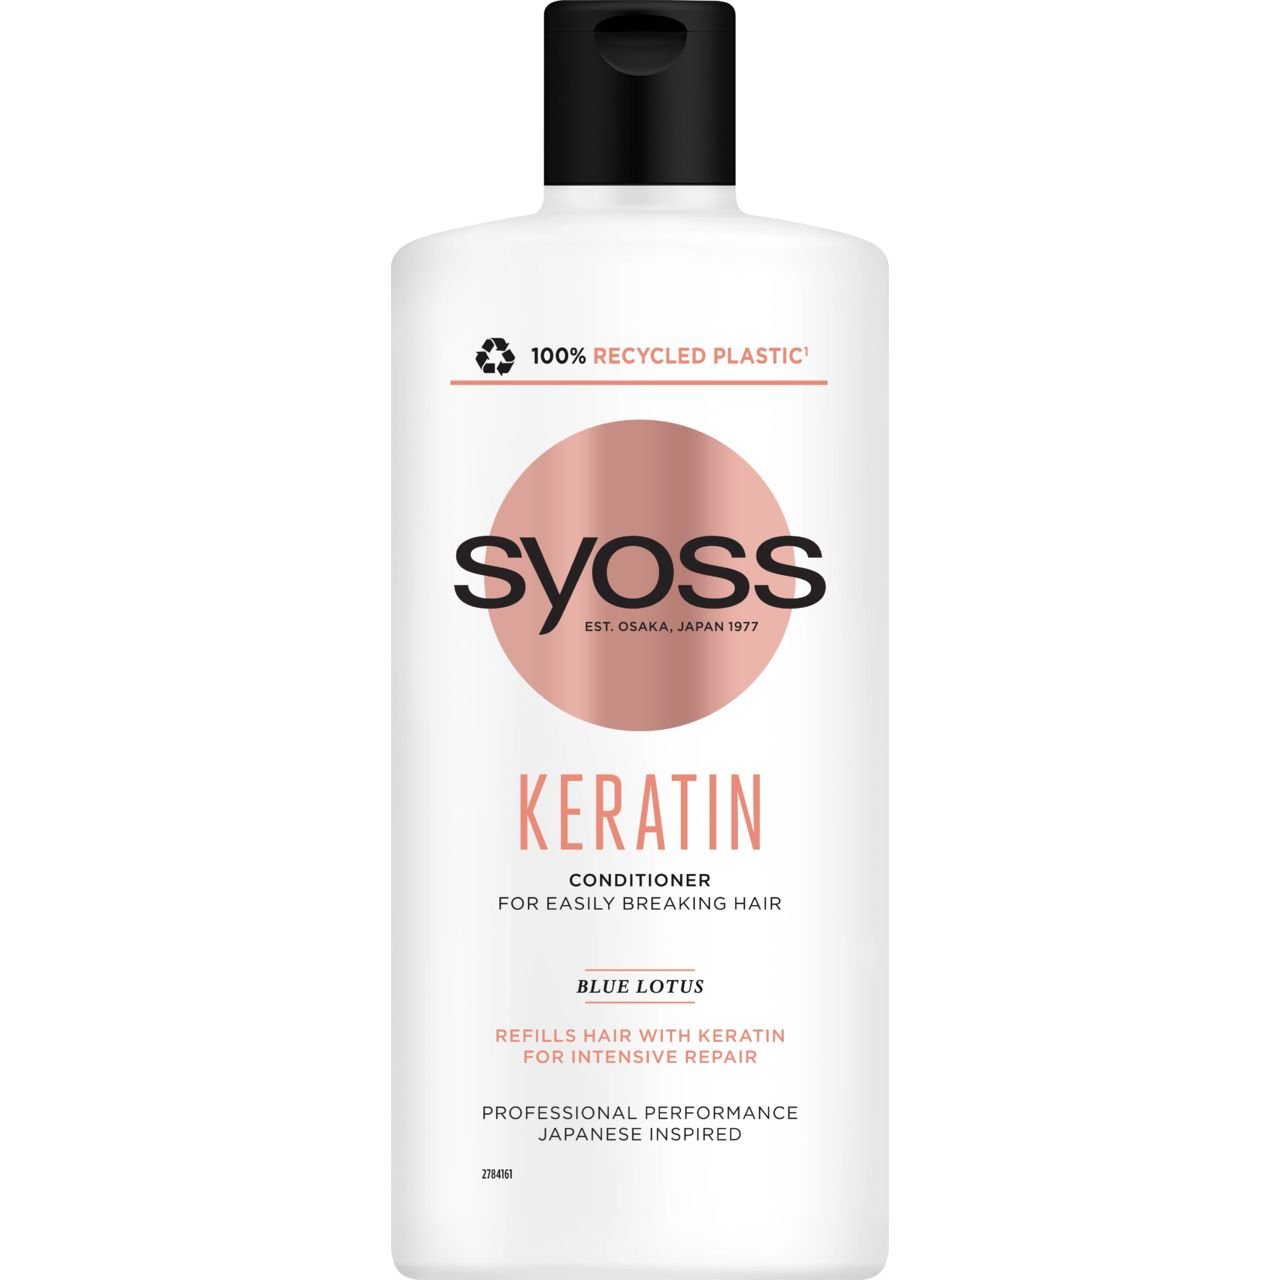 Набор Syoss Keratin для ломких волос: Шампунь Blue Lotus 440 мл + Бальзам Blue Lotus 440 мл - фото 3